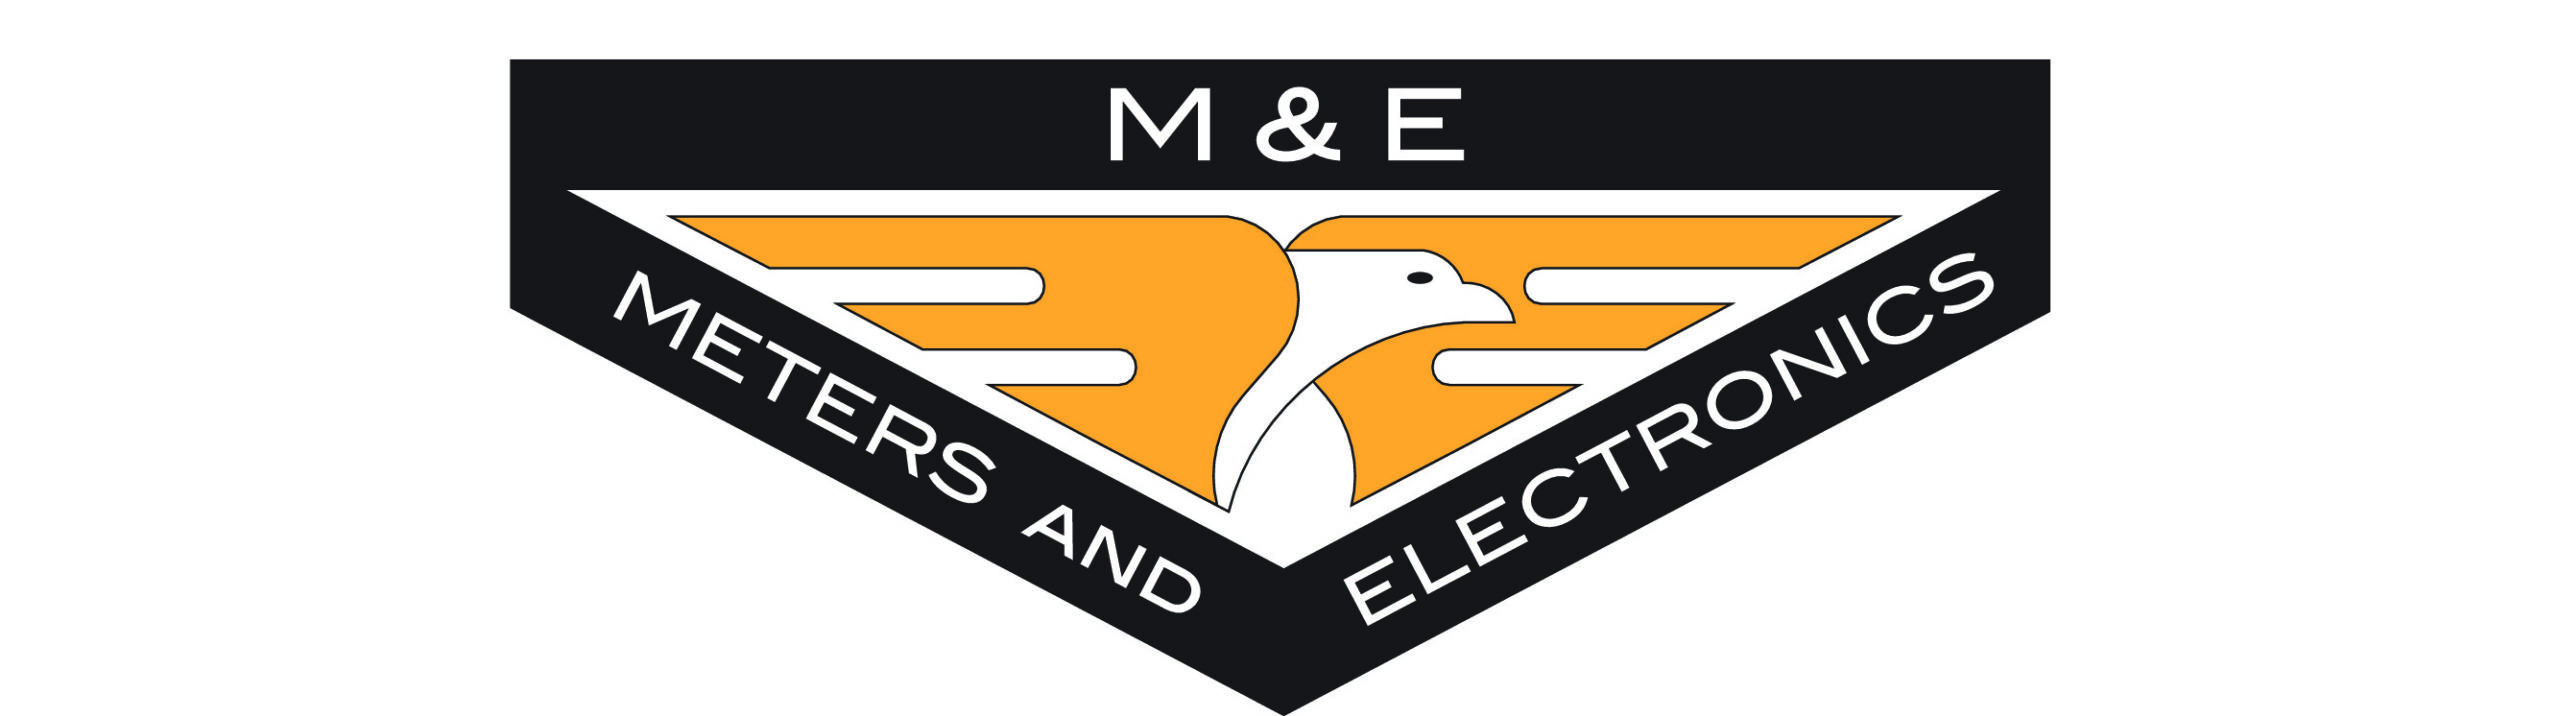 Meteres & Electronics